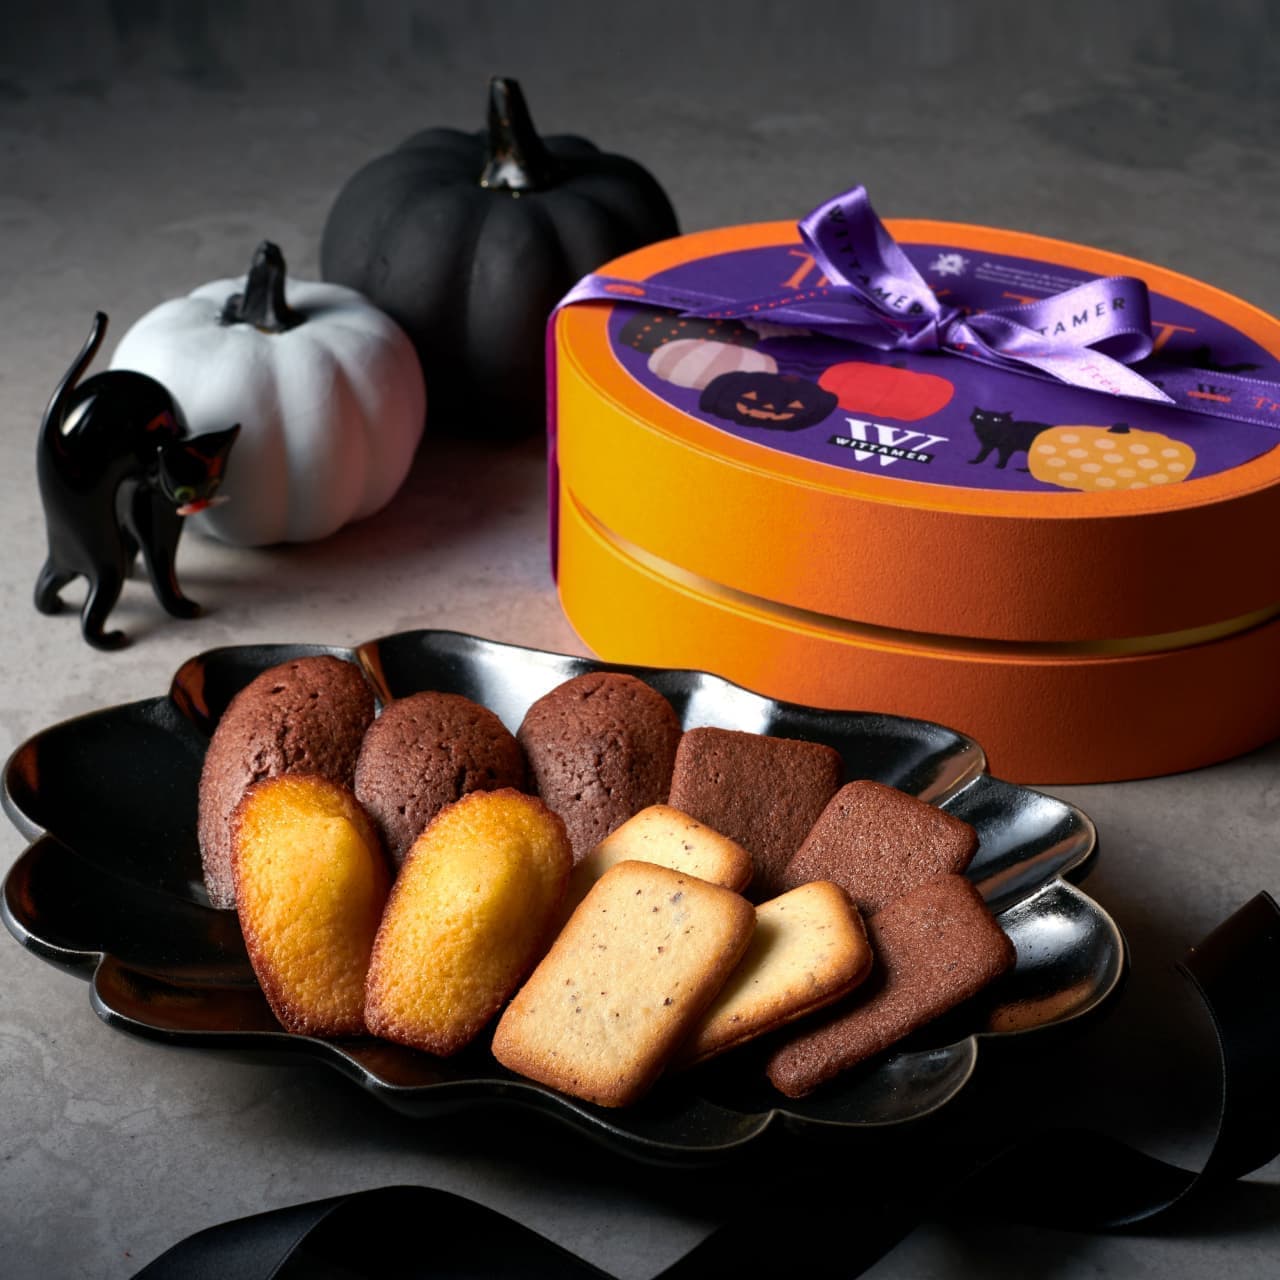 VITAMER "Halloween Special", "Halloween Gateau Box", "Halloween Macadamia Chocolat".